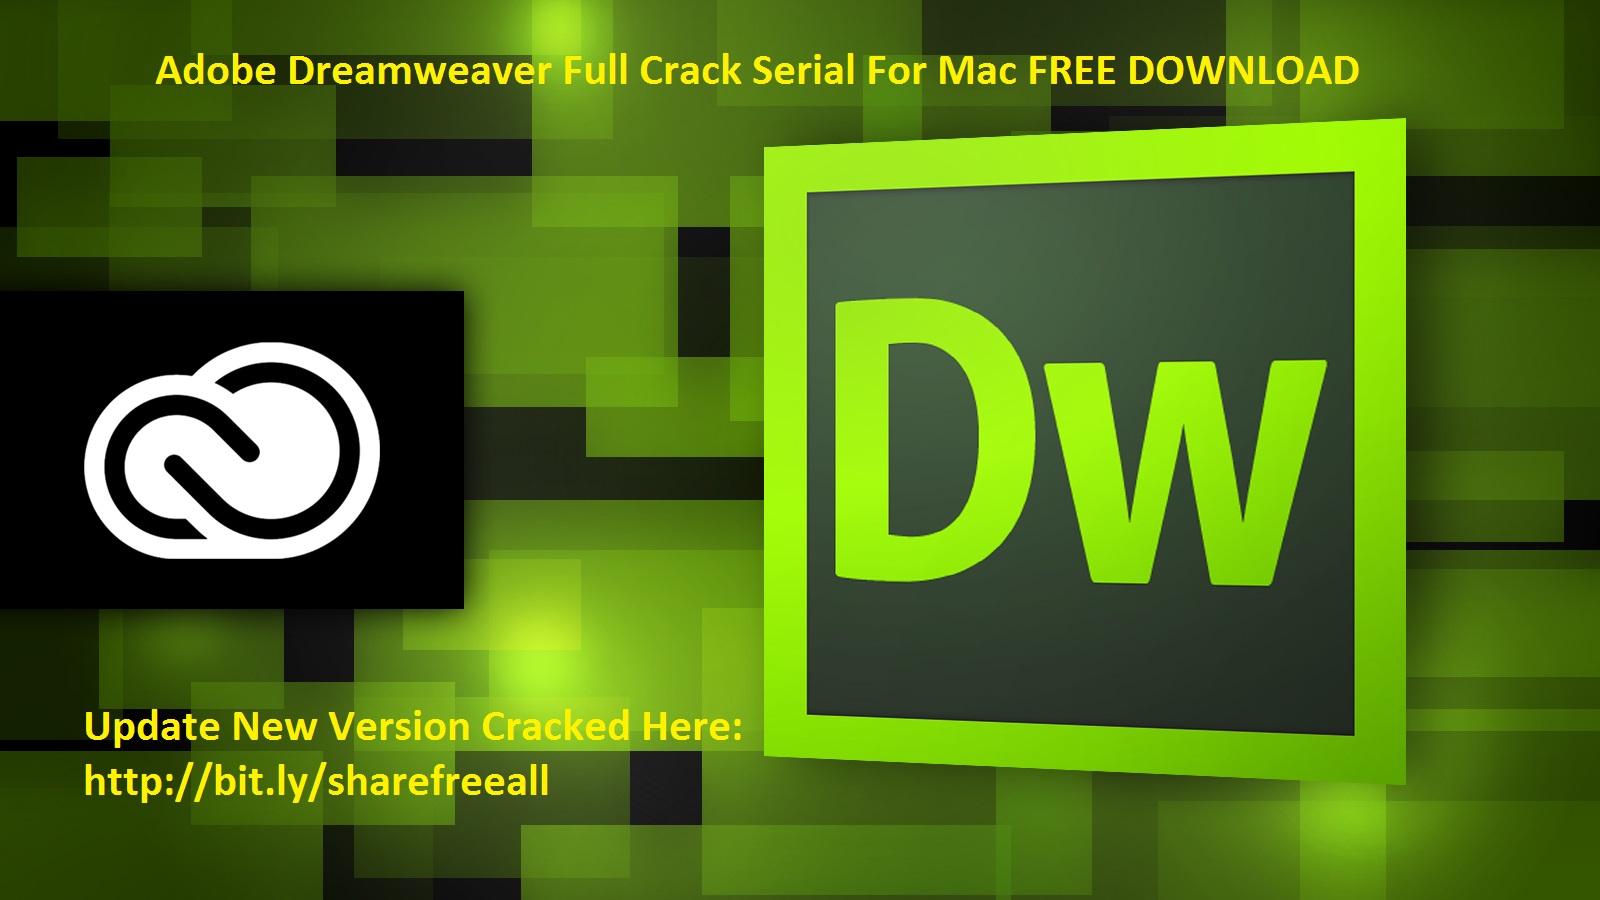 dreamweaver for mac free download crack